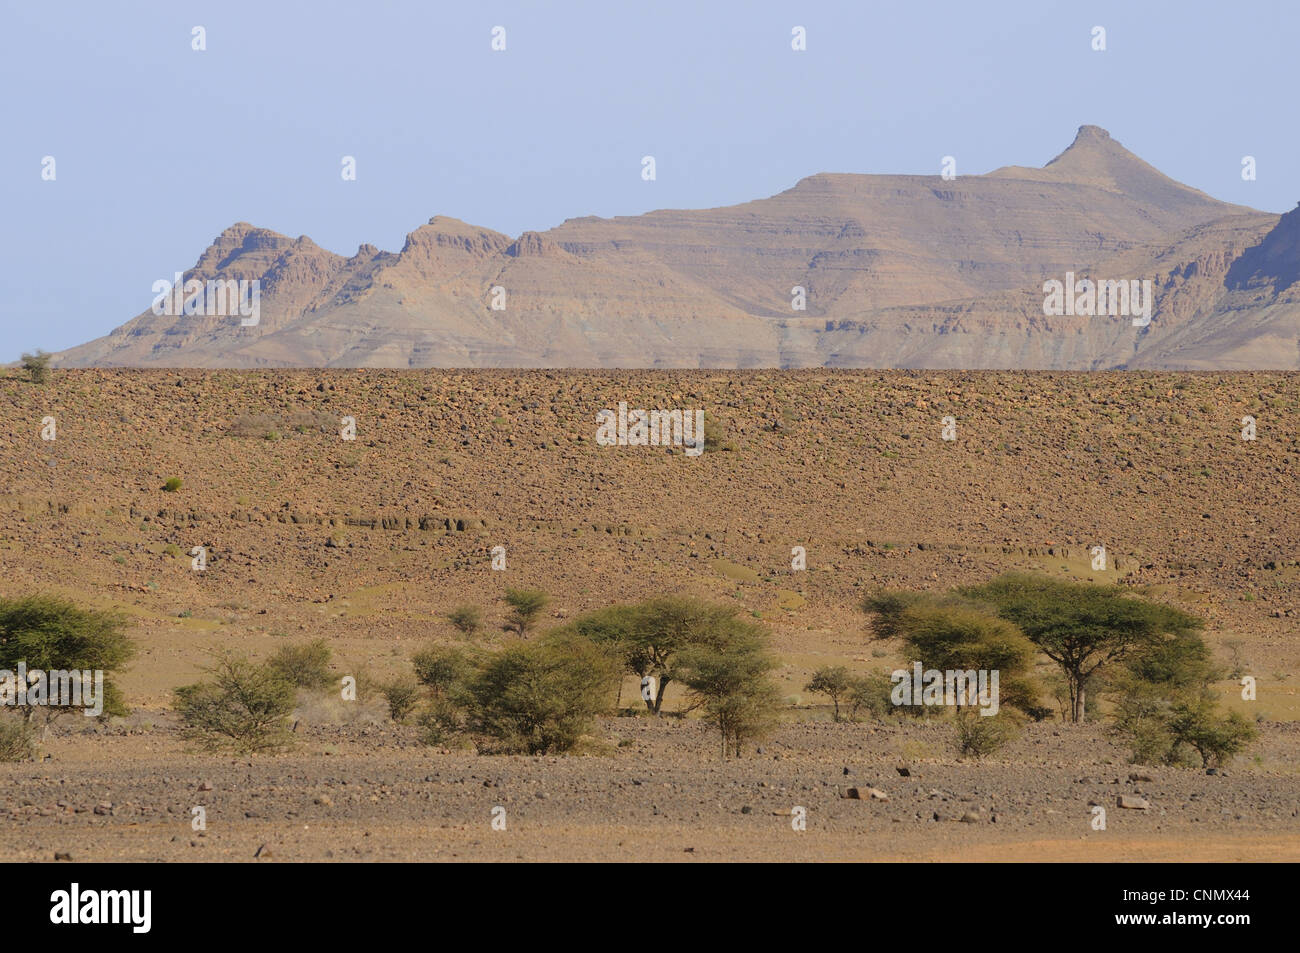 Vue de l'habitat du désert rocheux d'acacias, Tazzarine, Maroc, janvier Banque D'Images